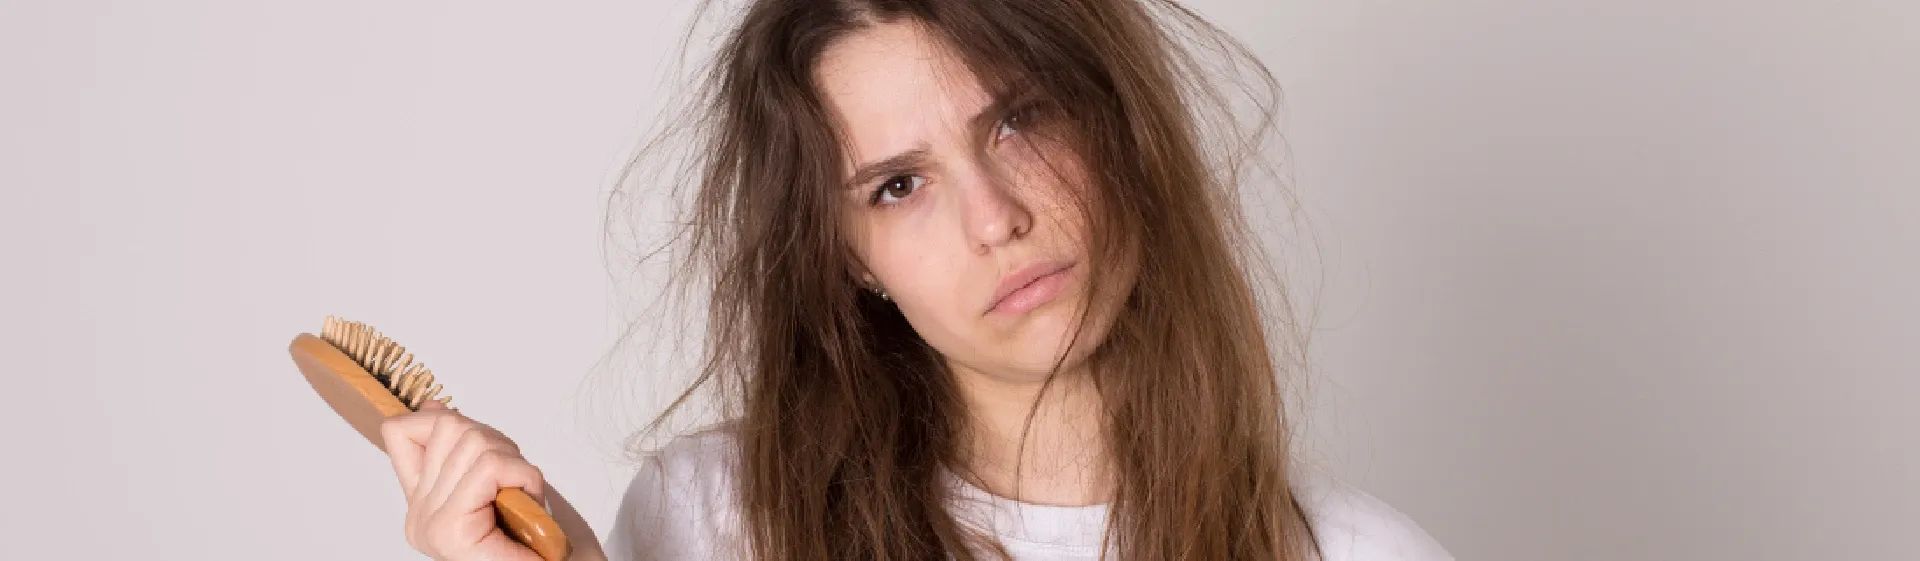 Capa do post: Tendo um bad hair day? 7 produtos e dicas para salvar os fios